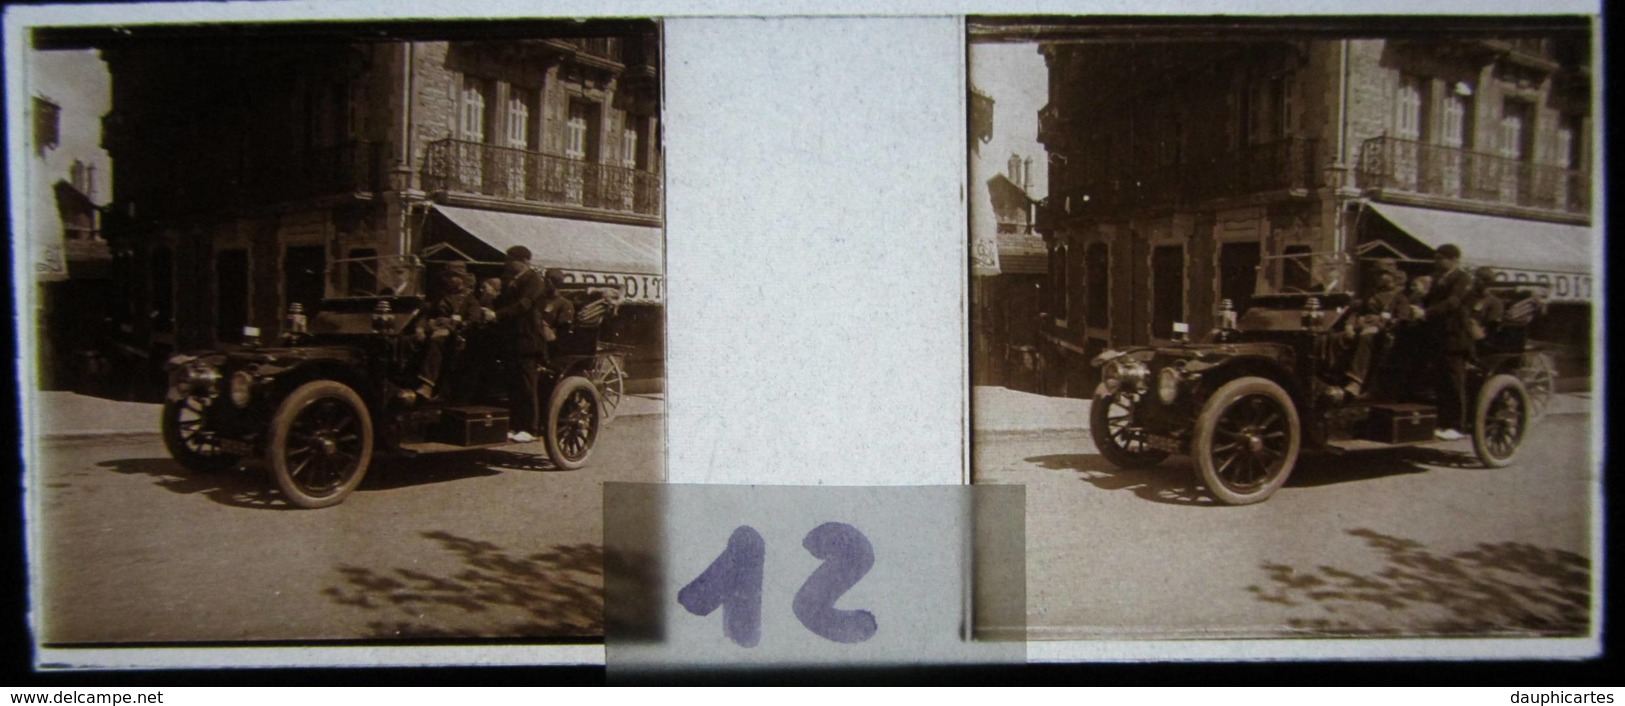 PLOMBIERES, Vosges : Vieille Voiture, Tacot, Dans Une Rue, 1908. Plaque De Verre Stéréoscopique. Positif - Plaques De Verre